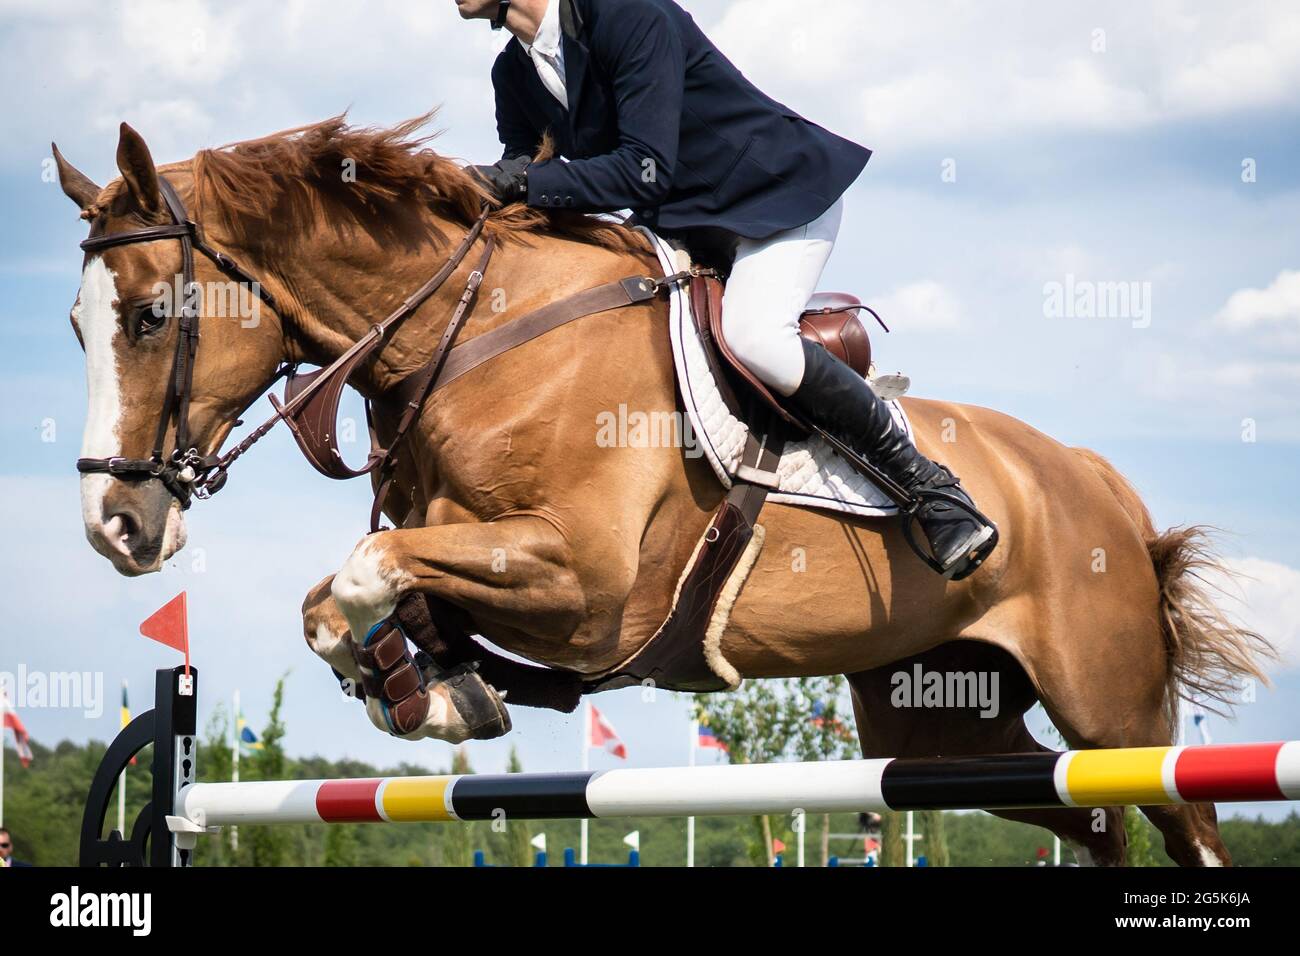 Sports équestres photo-thème: Le saut à cheval, le saut de spectacle, l'équitation. Banque D'Images